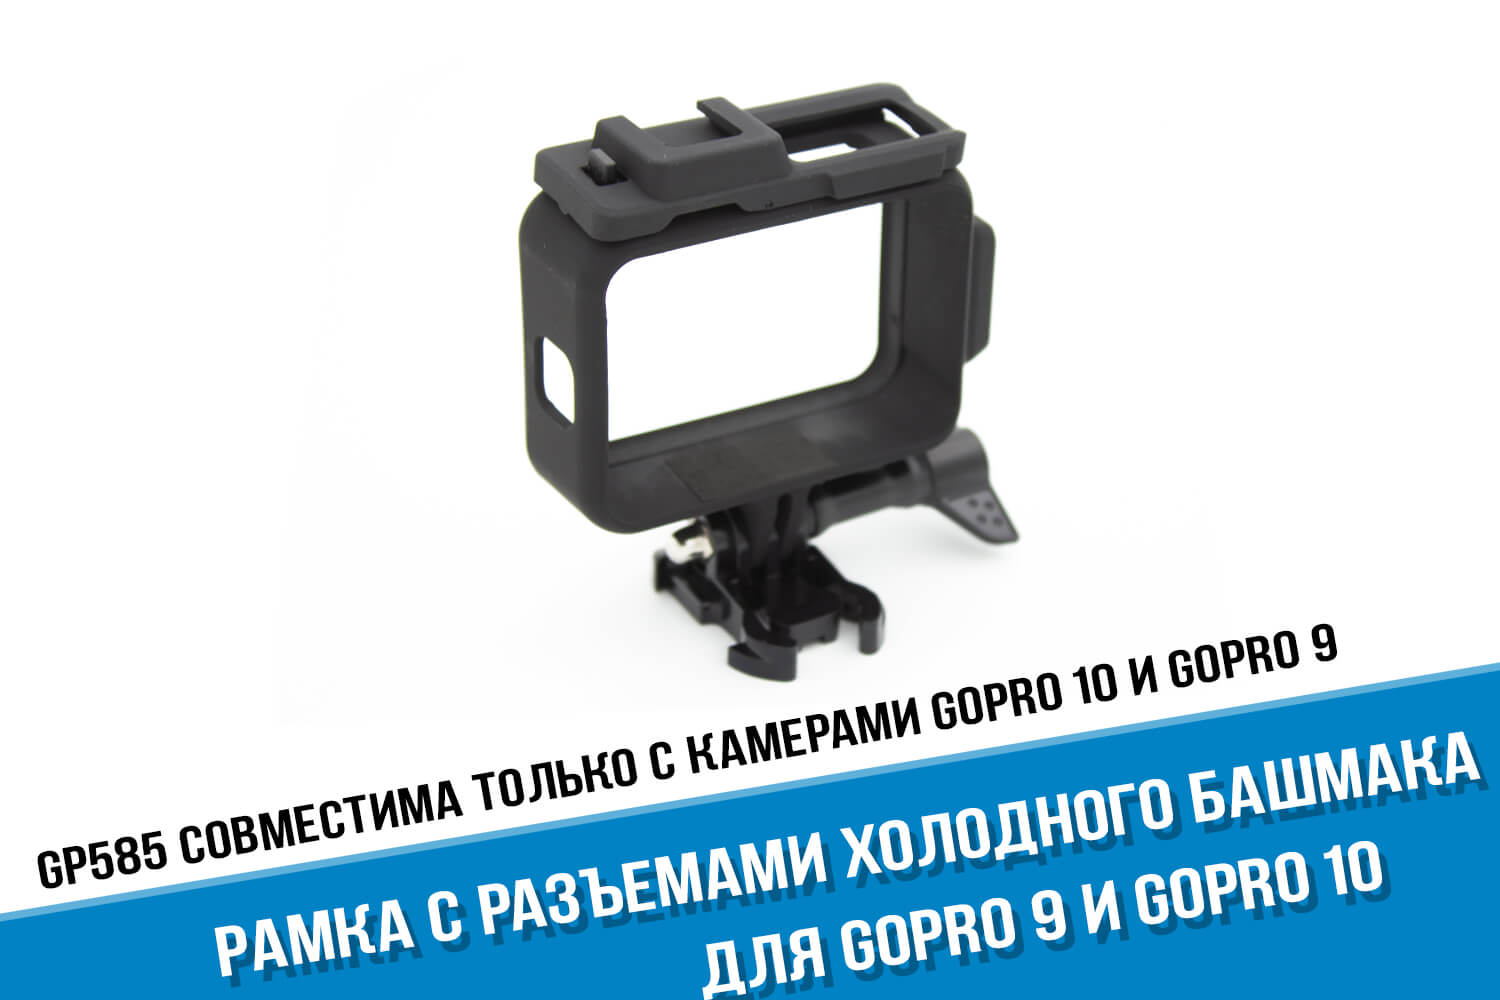 Рамка для камеры GoPro 9 с разъемами под холодный башмак